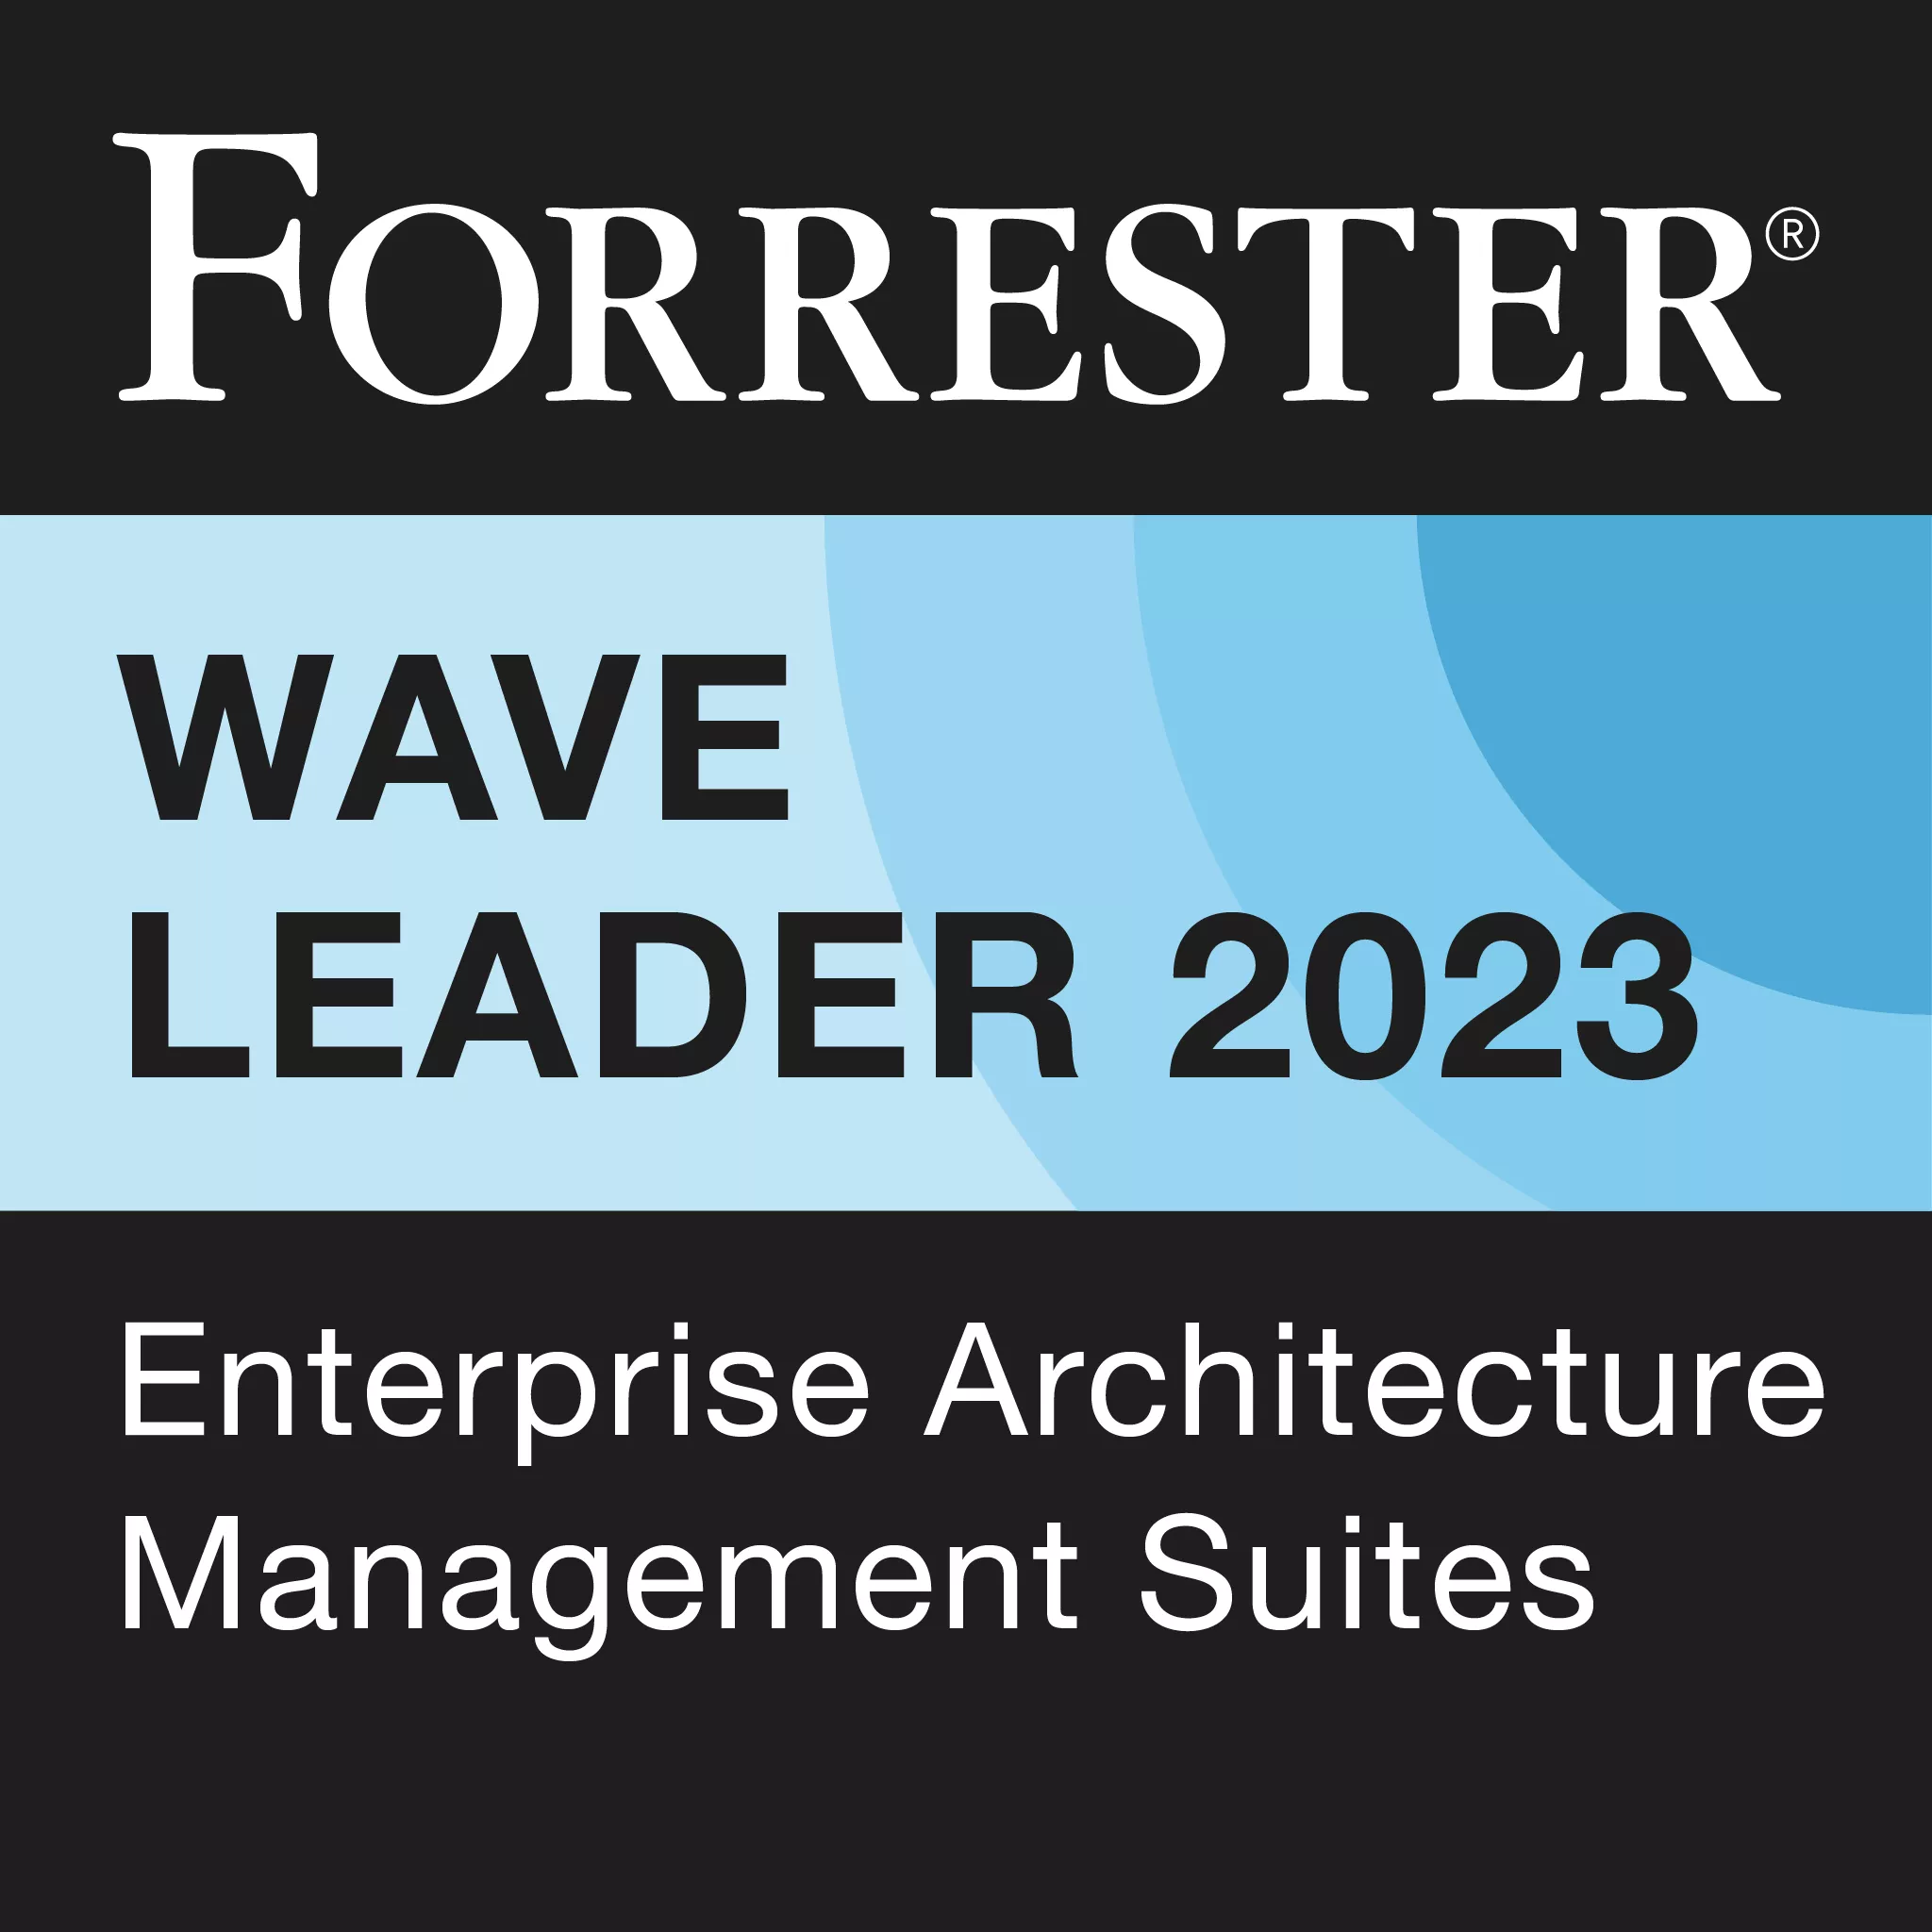 Forrester Wave Leader 2023 EAM Suite